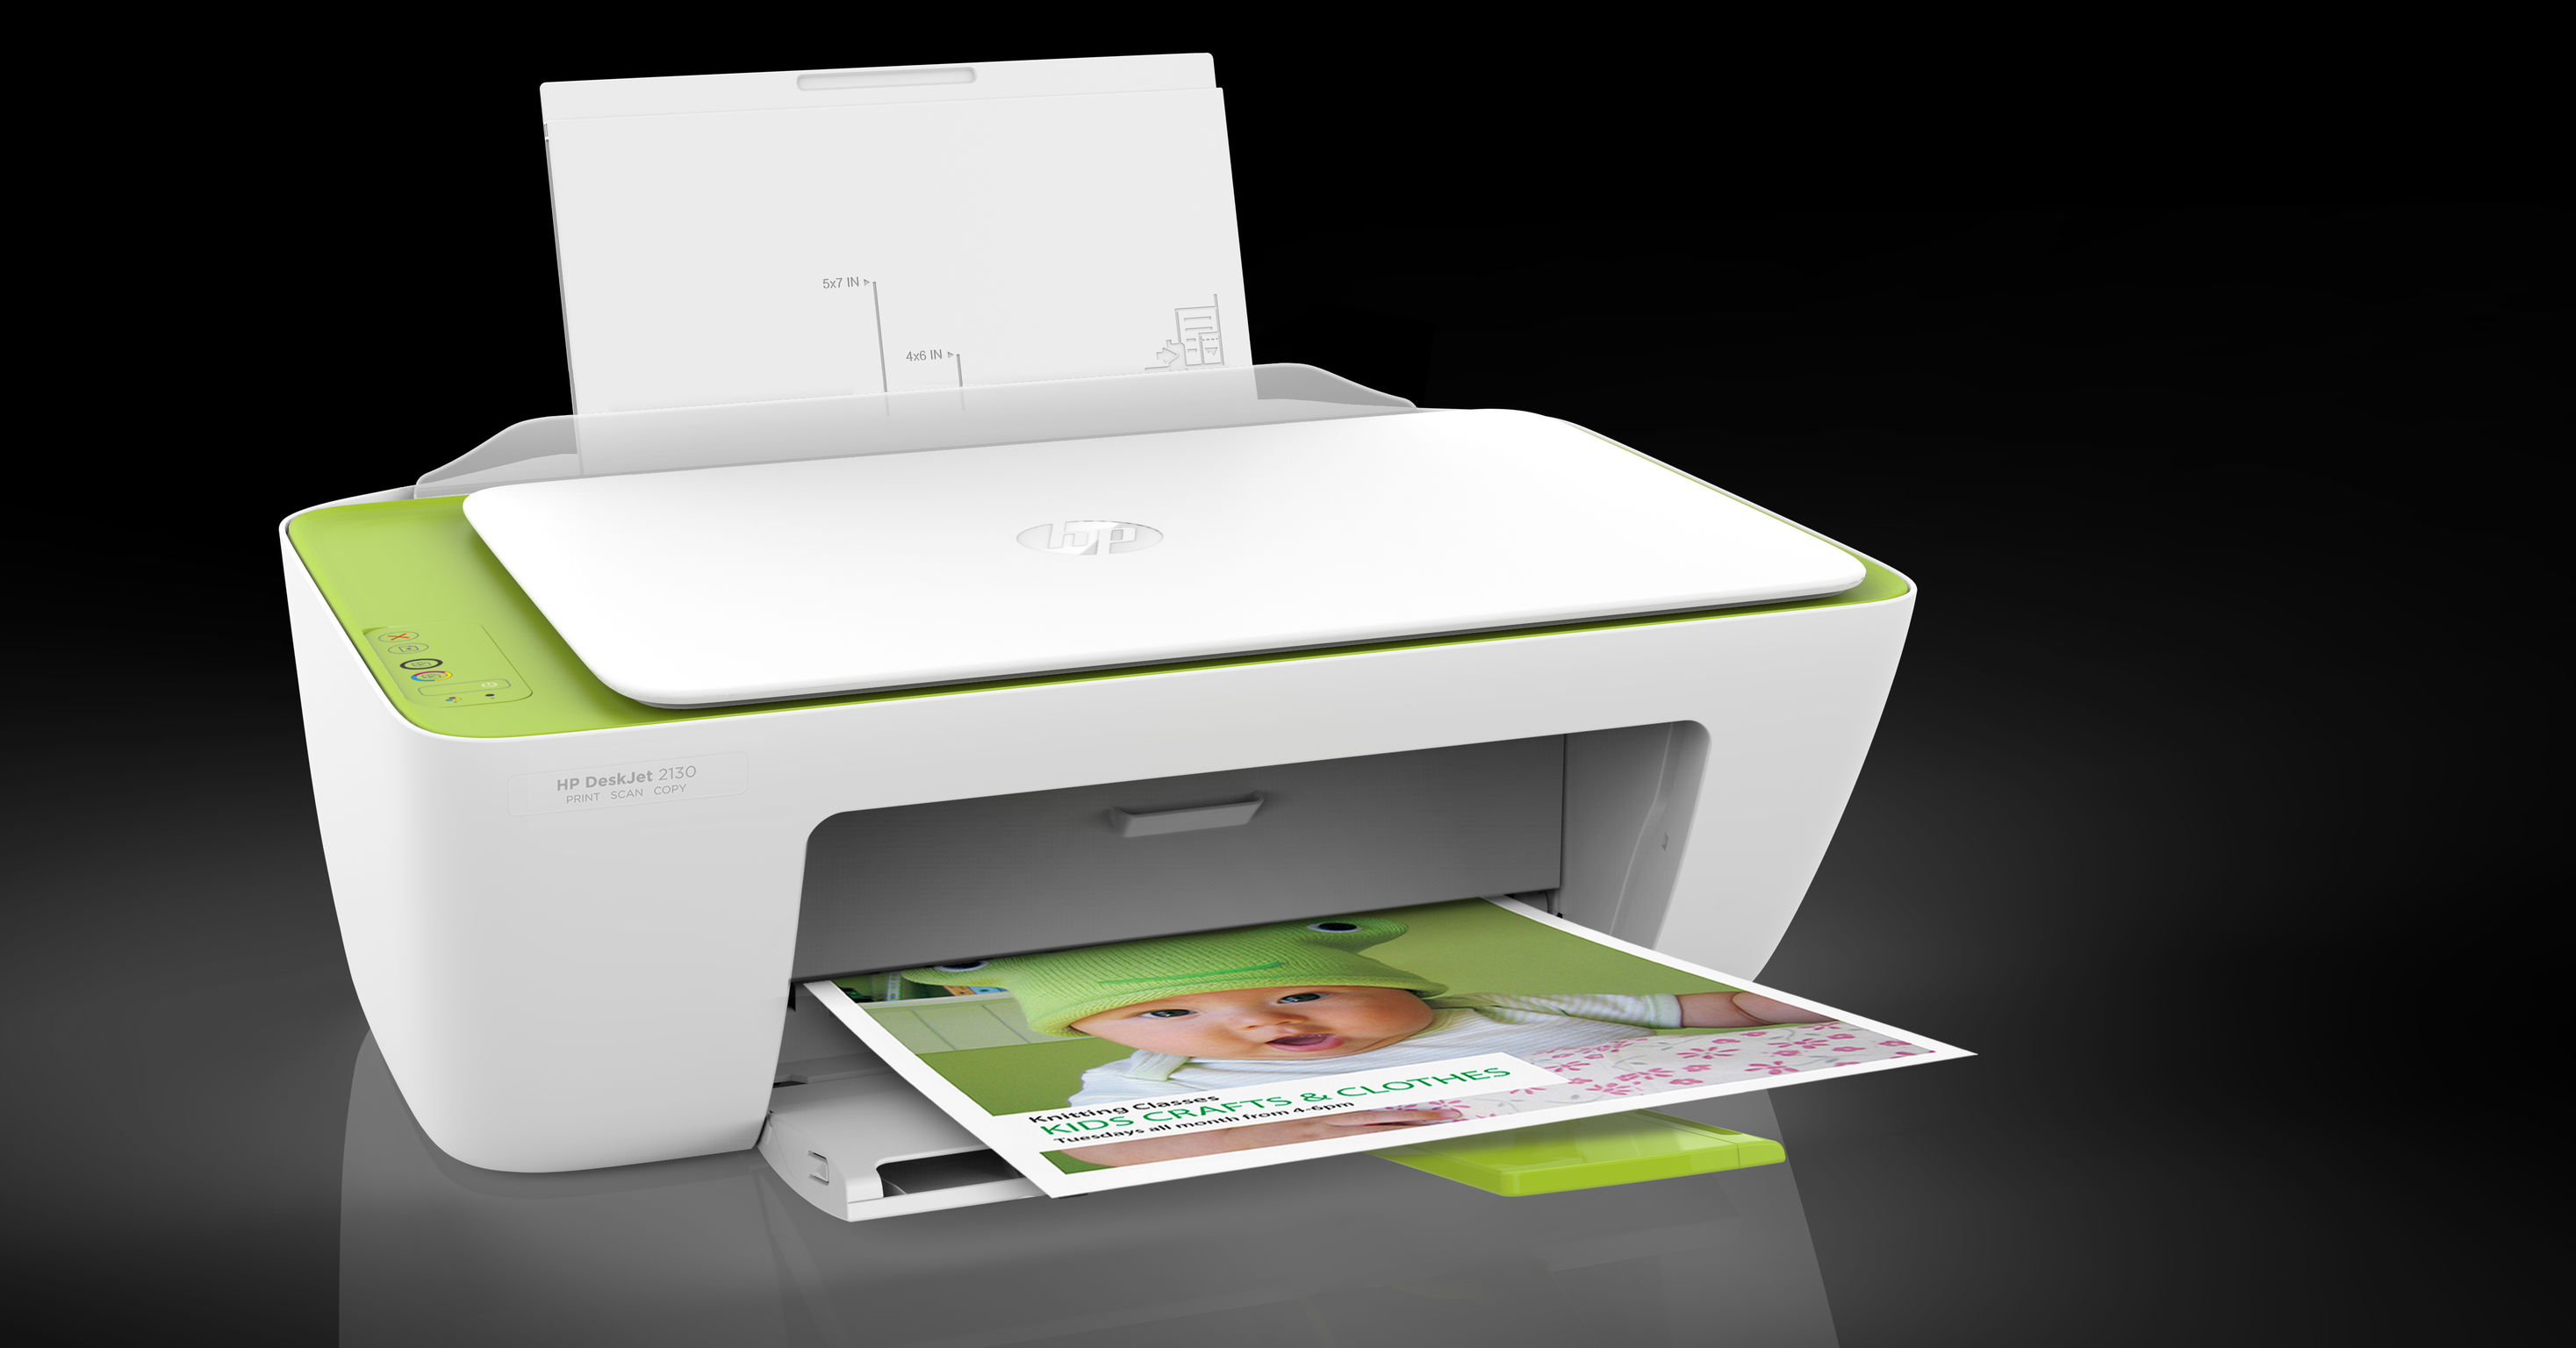 Hp deskjet 2130 all-in-one printer user manual pdf